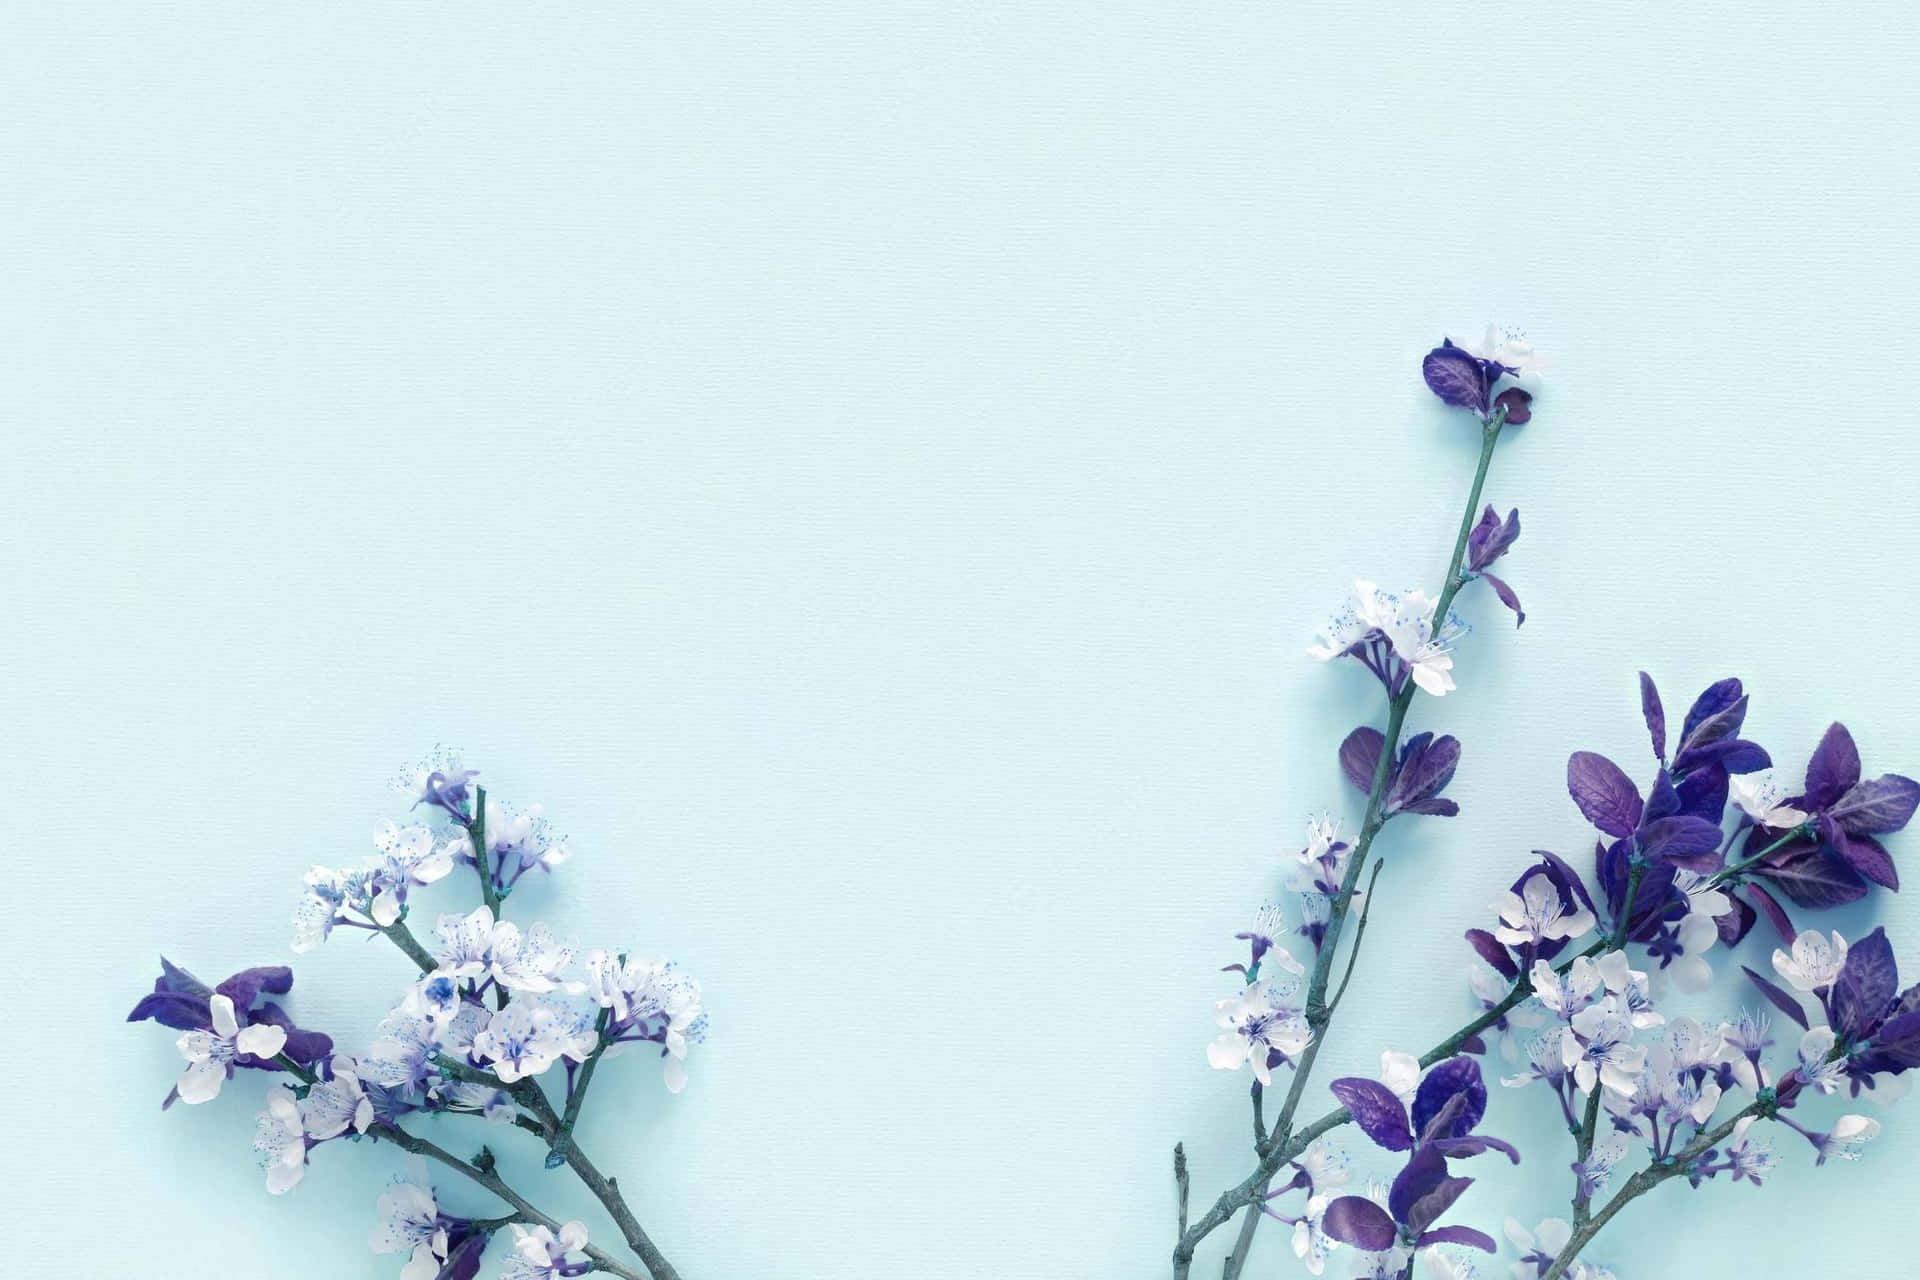 Tykke klynger af blå blomster nyder solens stråler, hvilket skaber et æstetisk naturlig skønhed. Wallpaper